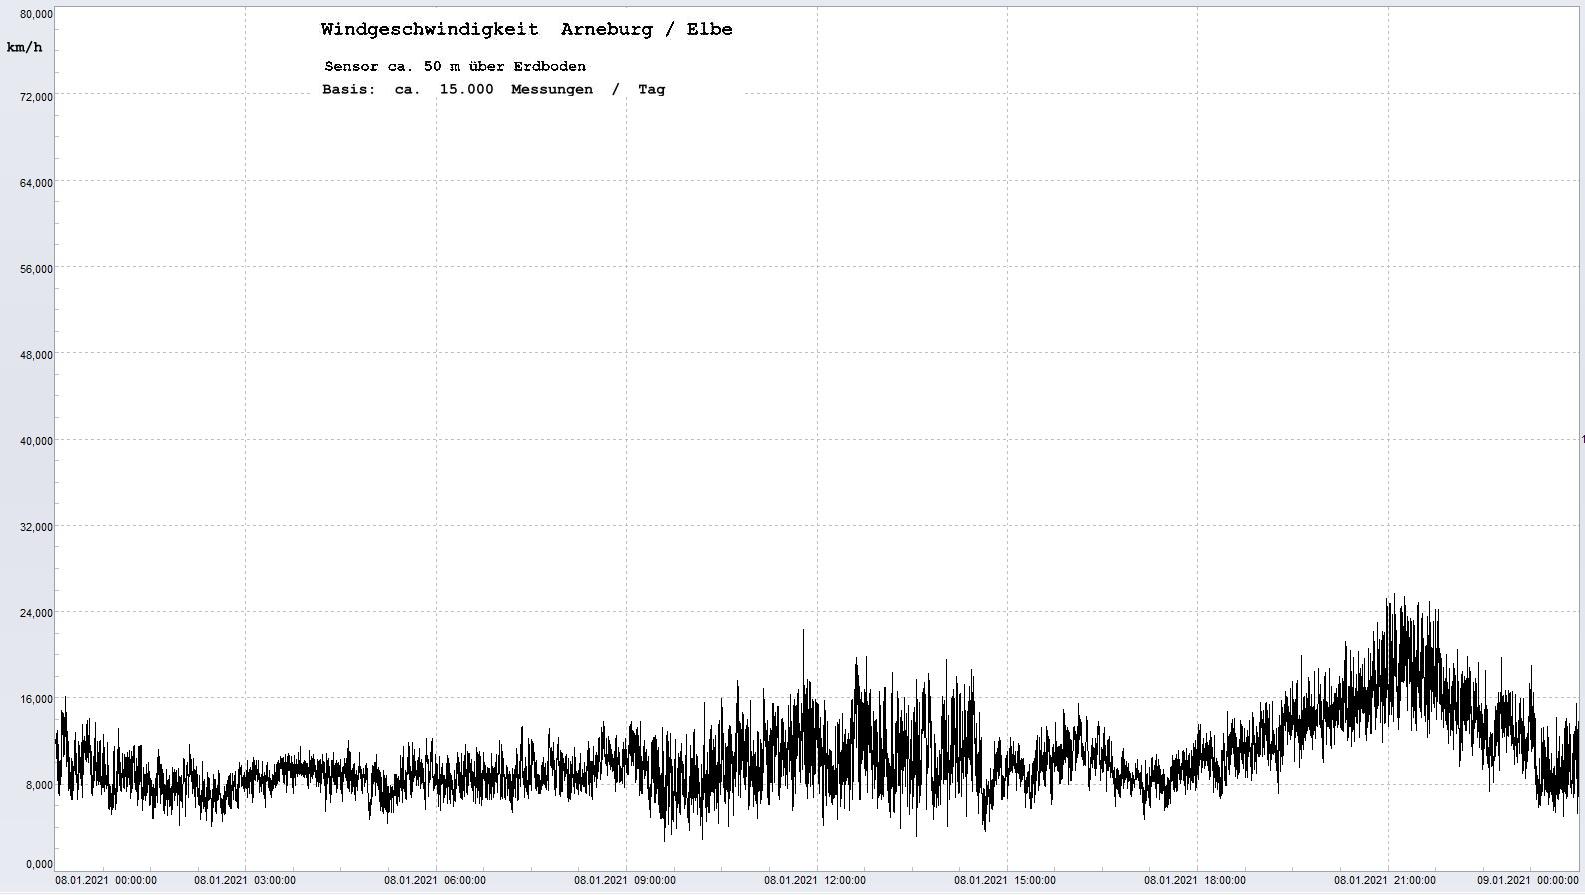 Arneburg Tages-Diagramm Winddaten, 08.01.2021
  Diagramm, Sensor auf Gebude, ca. 50 m ber Erdboden, Basis: 5s-Aufzeichnung